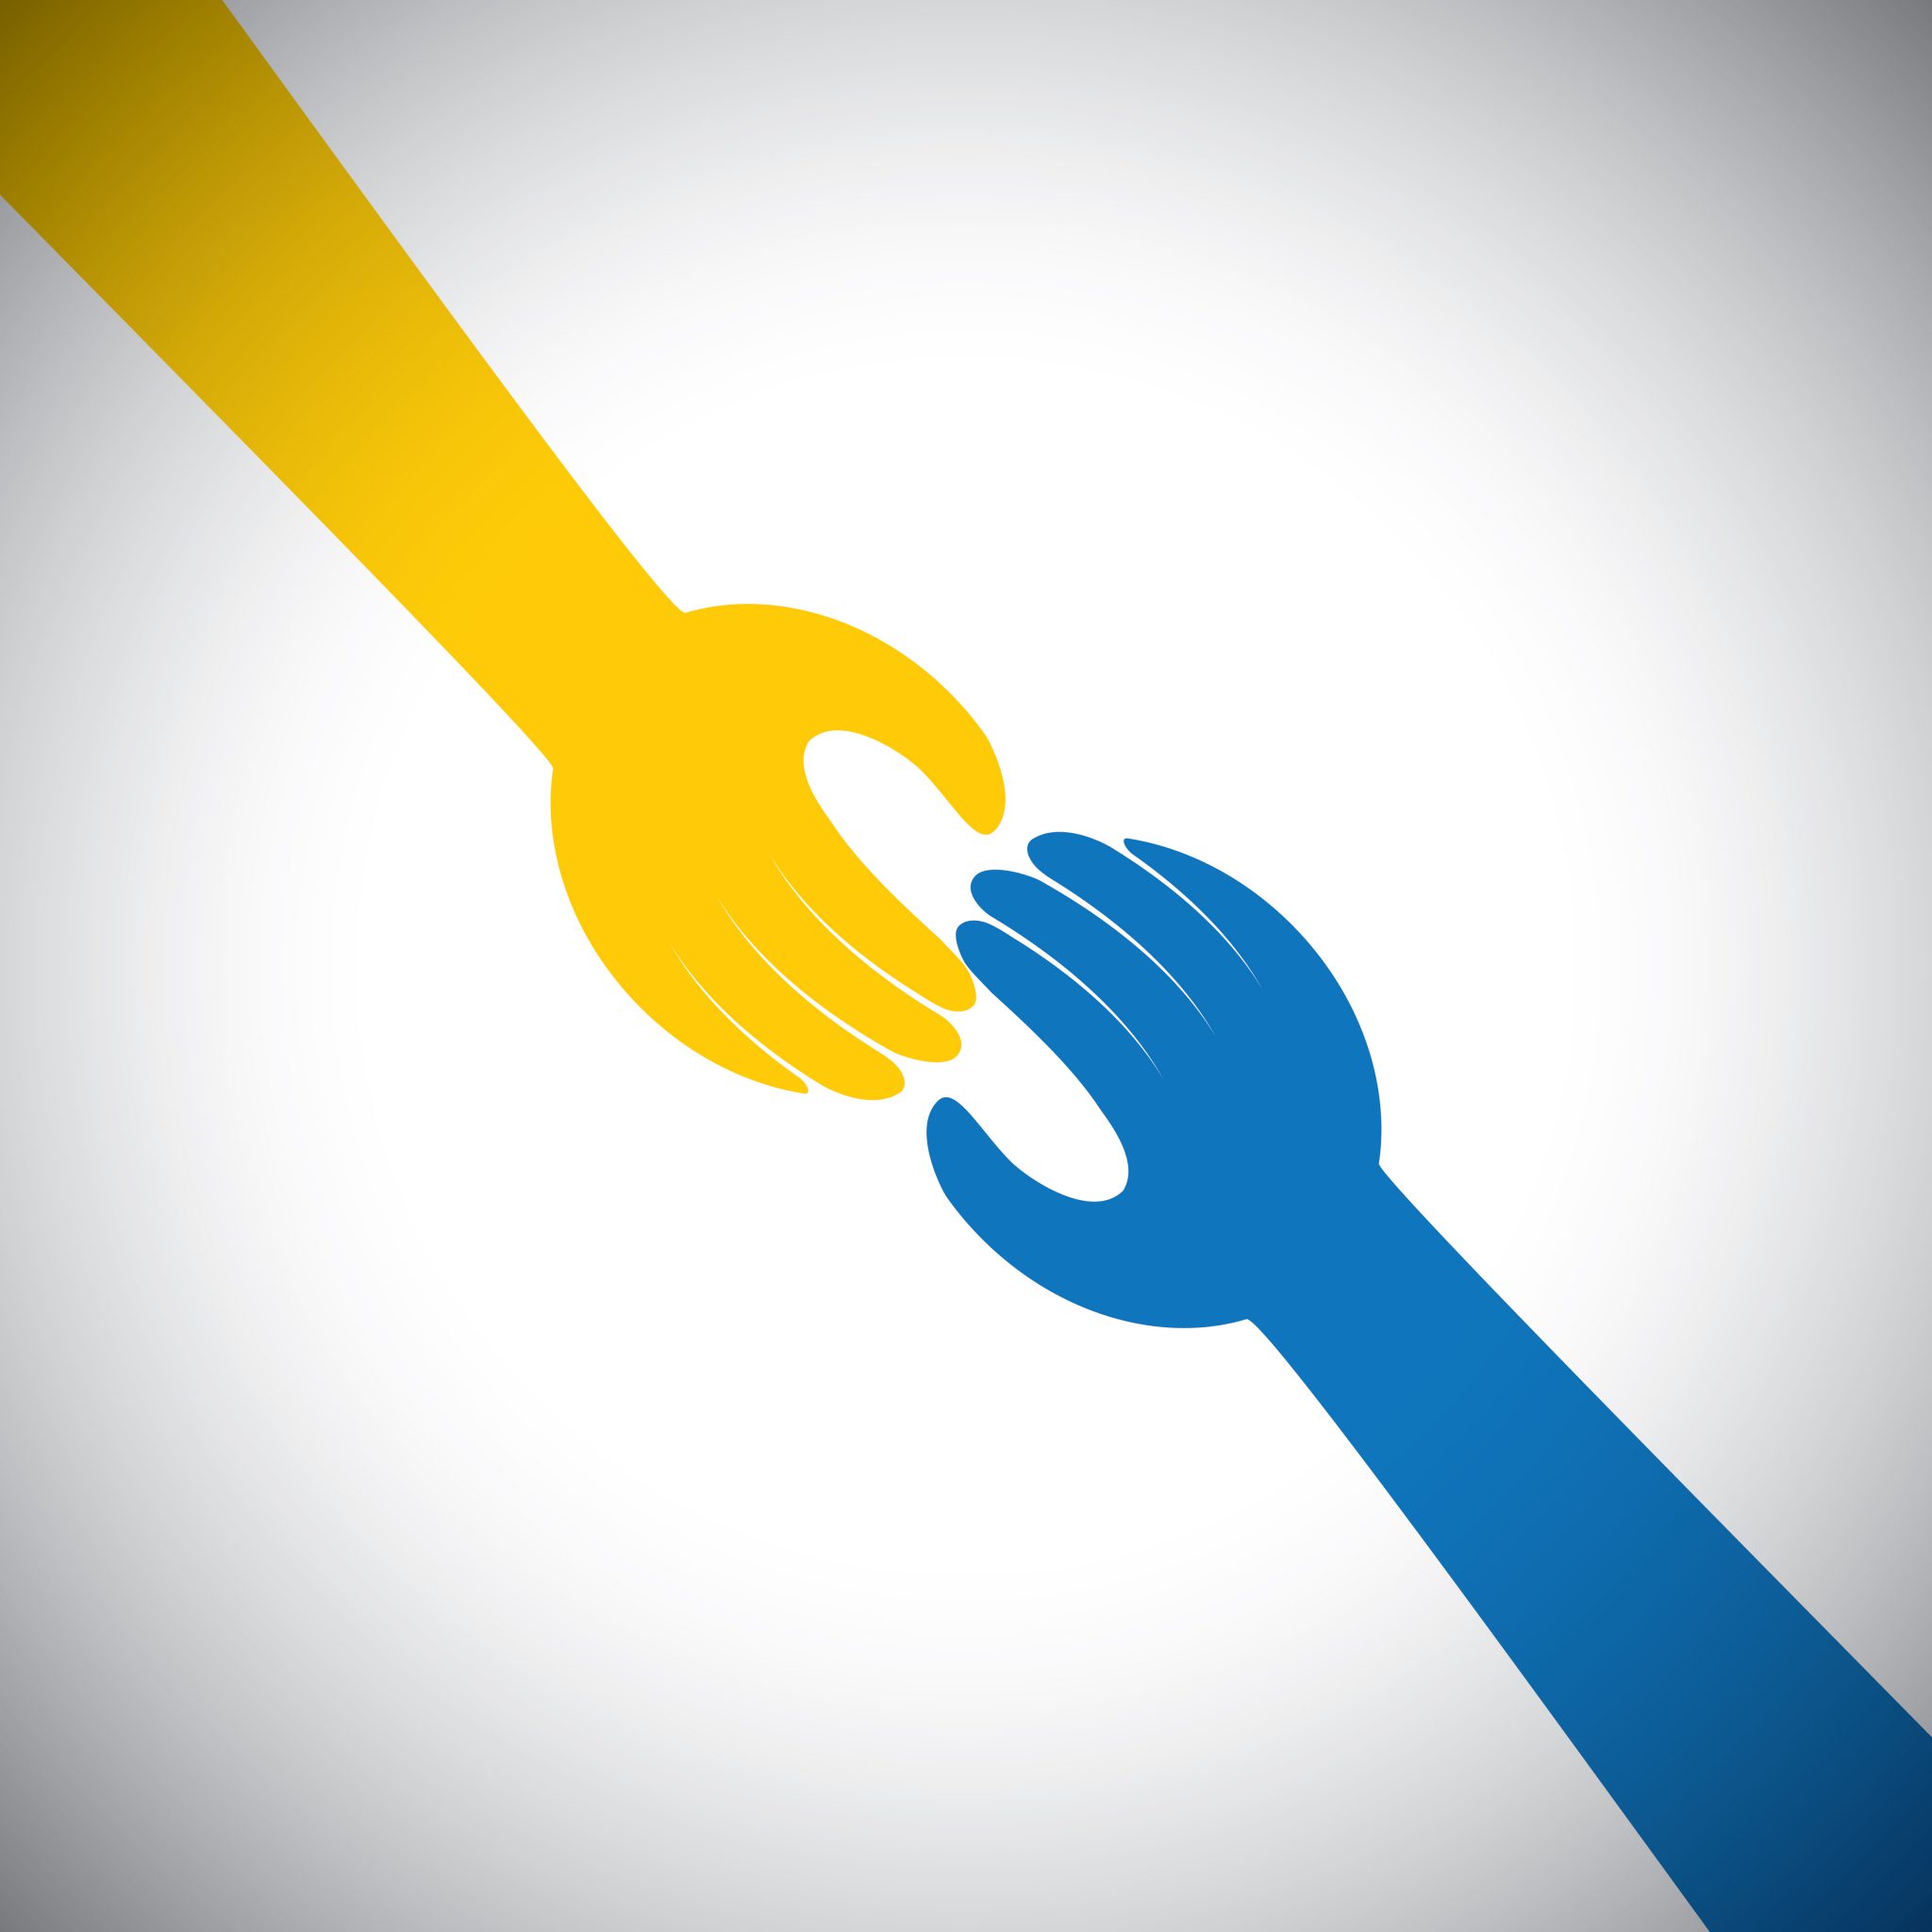 ícone de duas mãos tocando - conceito de receber, dar. Isso também representa conceitos como apoio, ajuda, empatia, bondade, parceria, amizade, cooperação, compromisso, compaixão